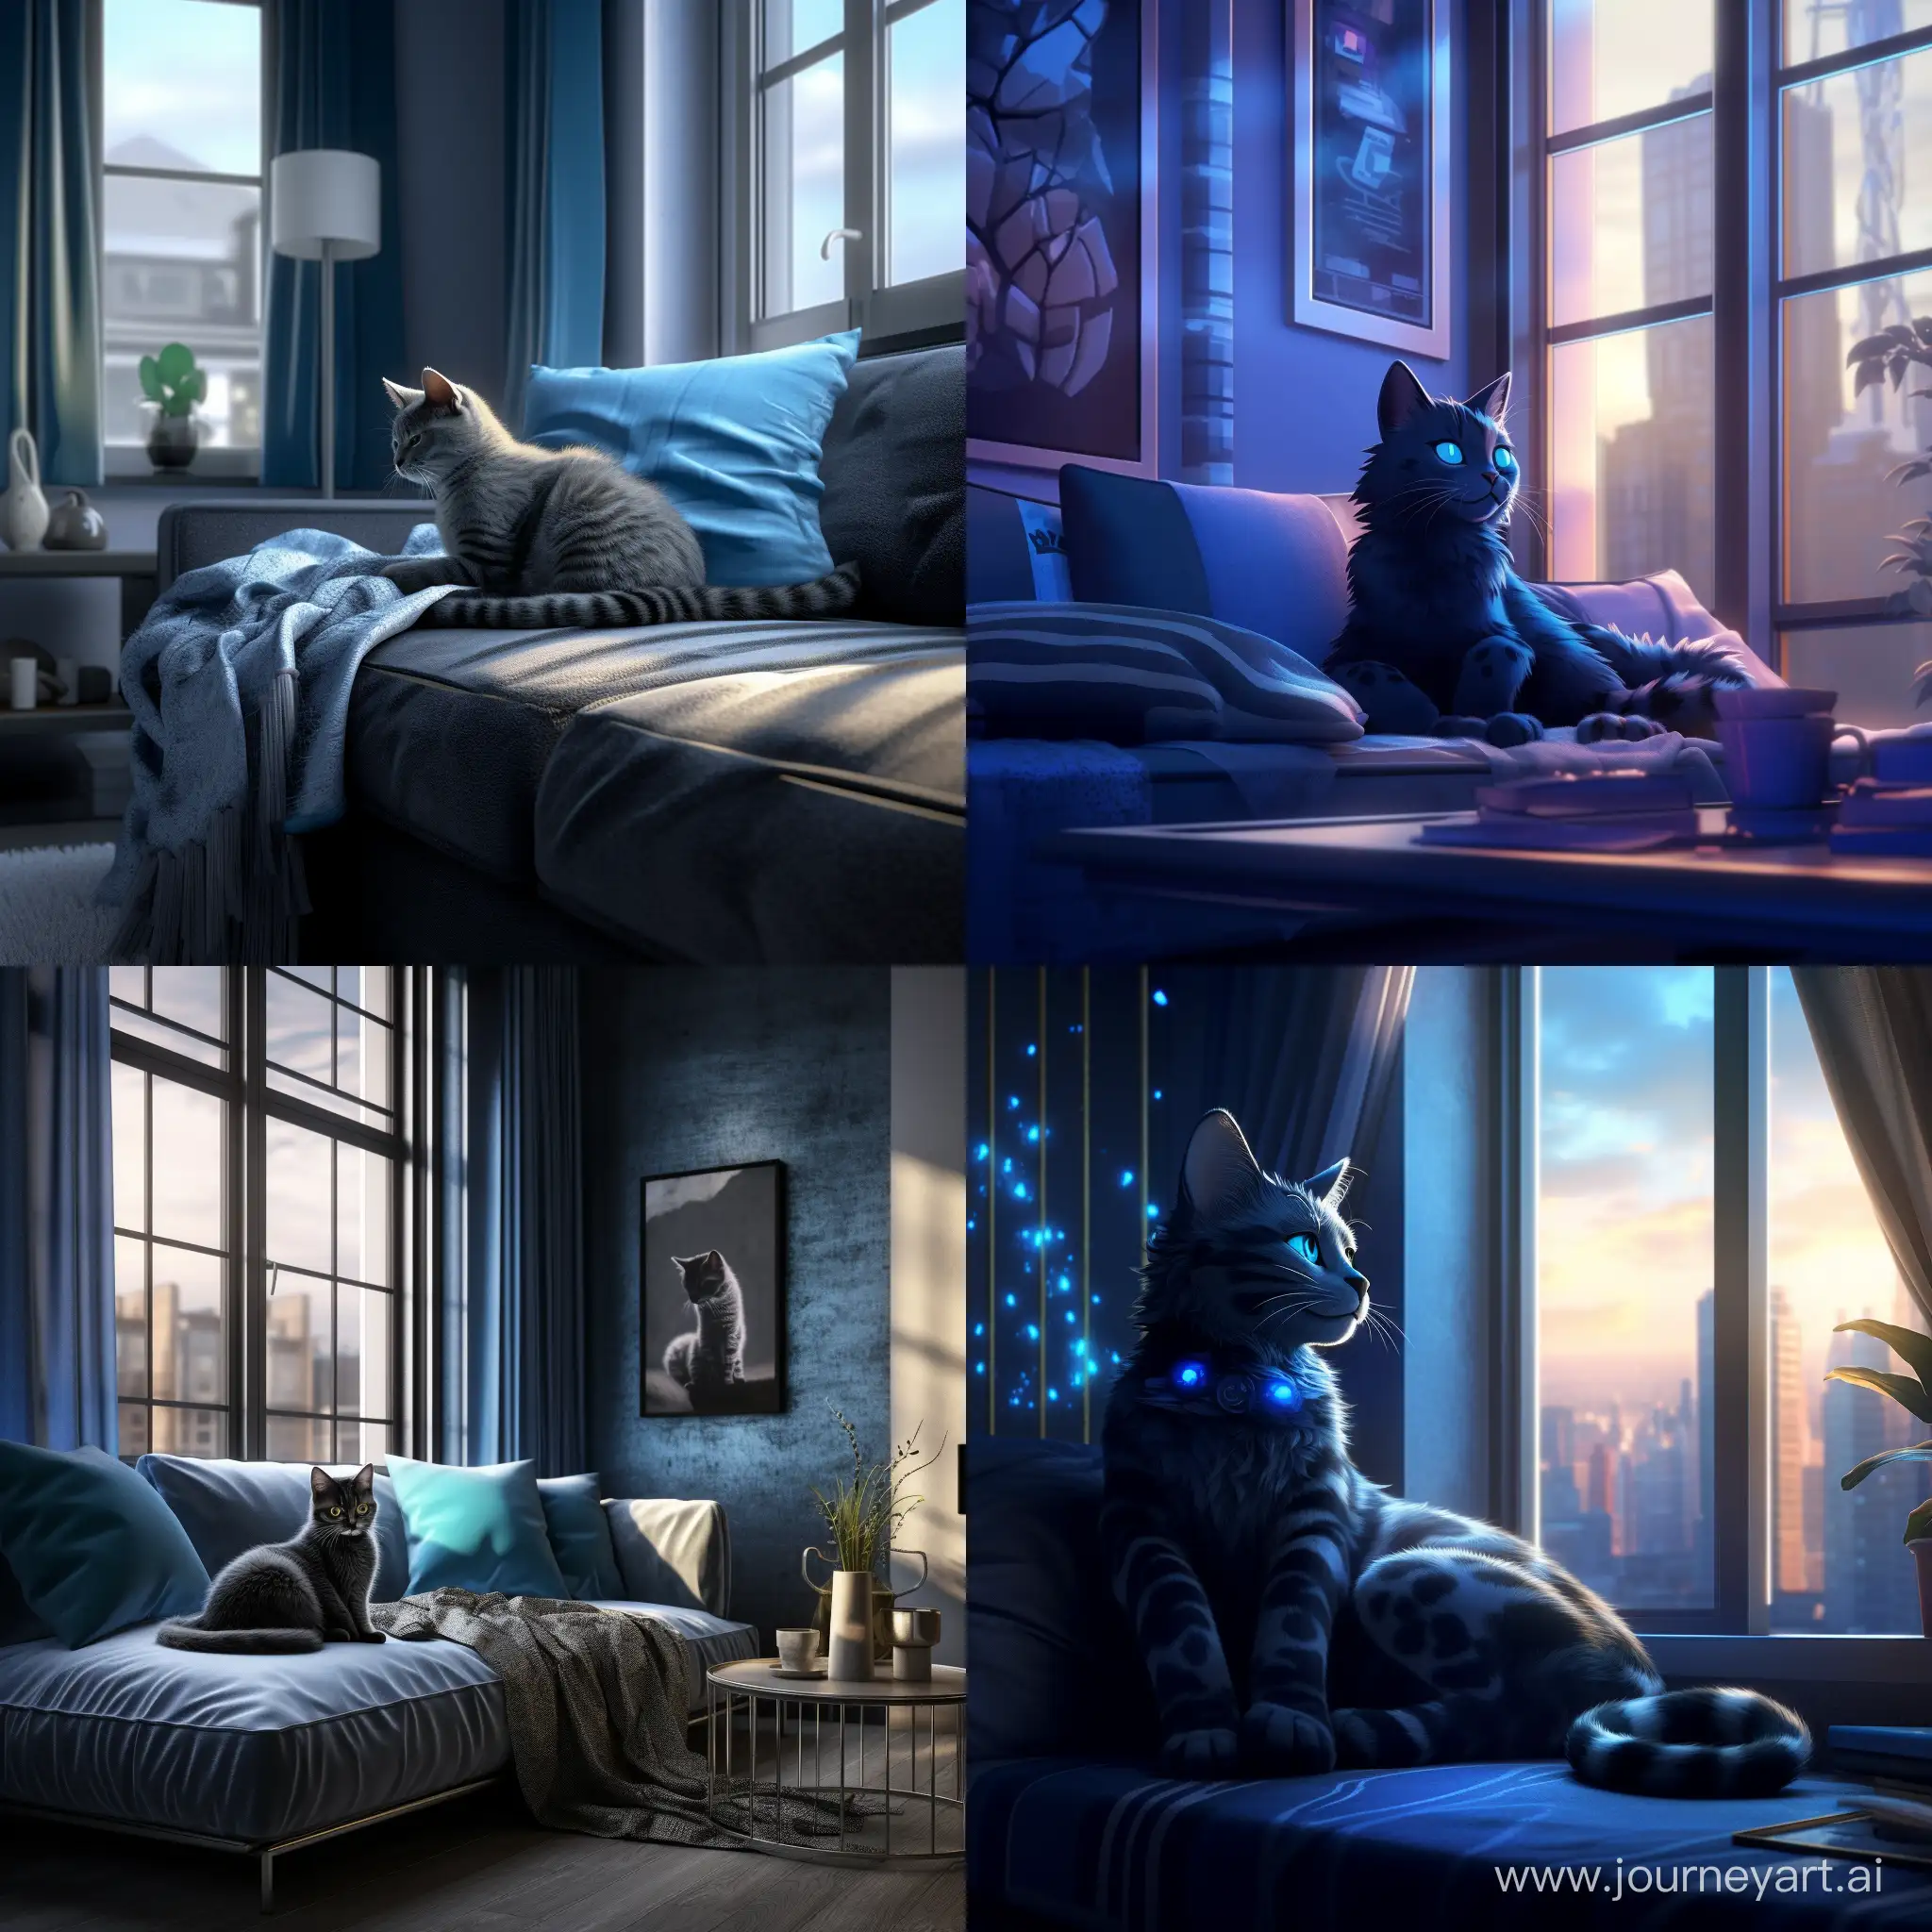 голубая кошка с черными узорами лениво разлеглась на фоне современной квартиры, мягкий свет проникает через окна отбрасывая блики на кошку